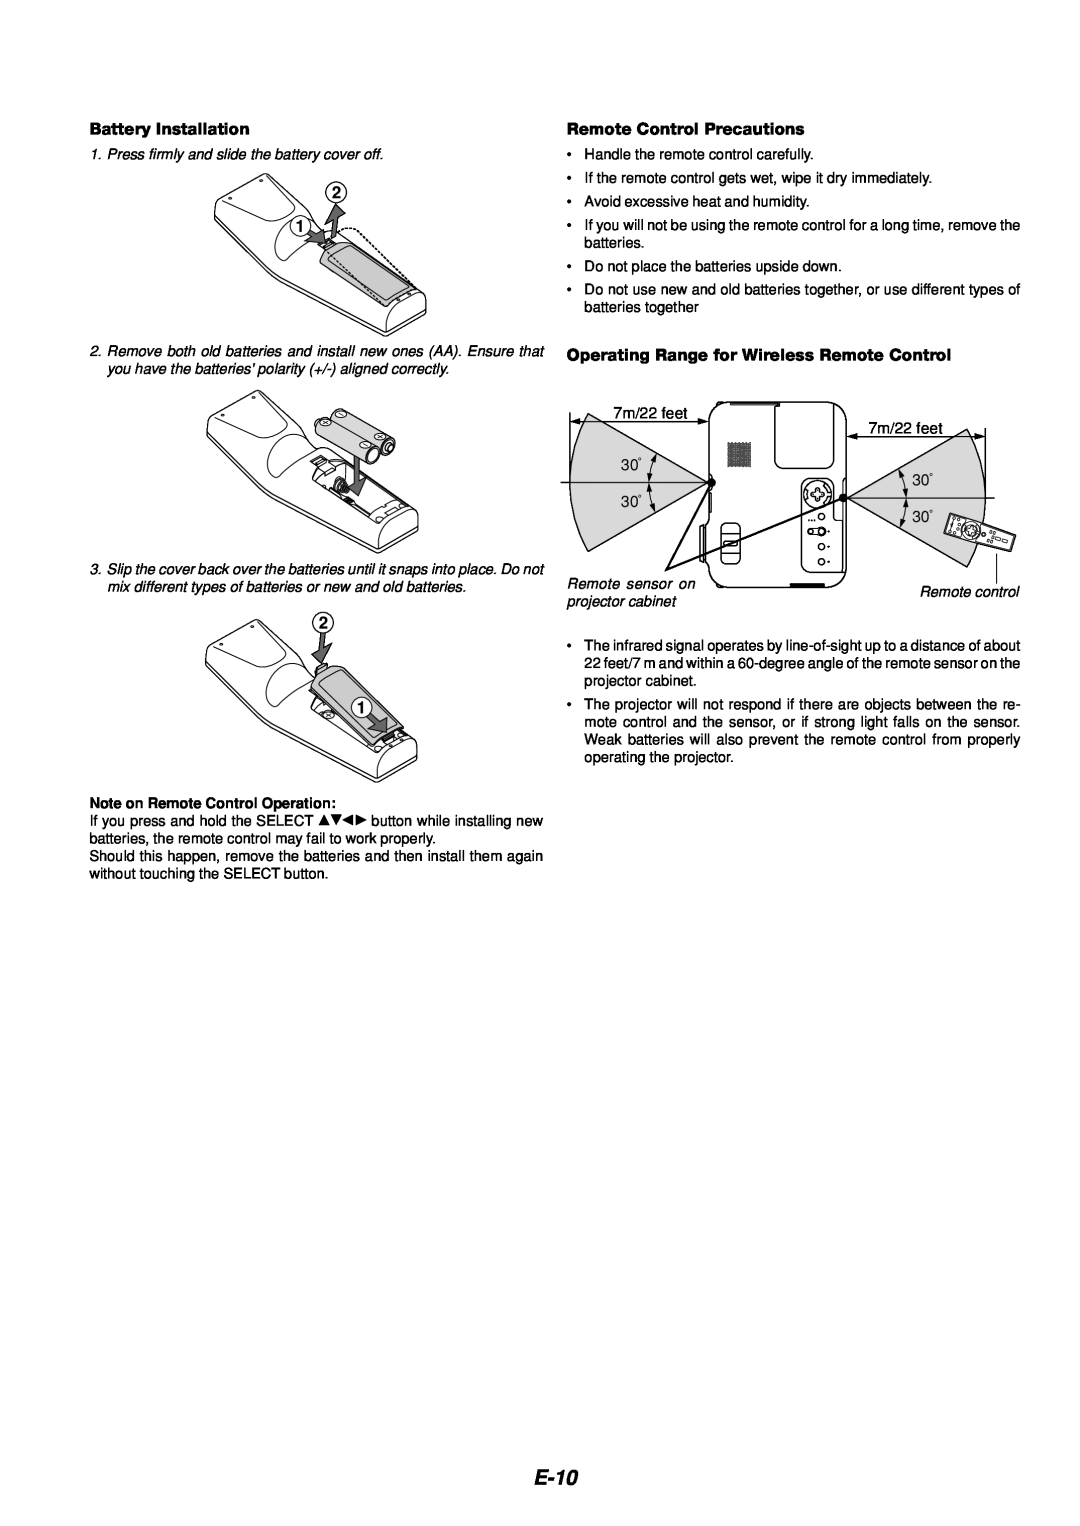 Dukane 8766 manual E-10, Battery Installation, Remote Control Precautions, Note on Remote Control Operation 